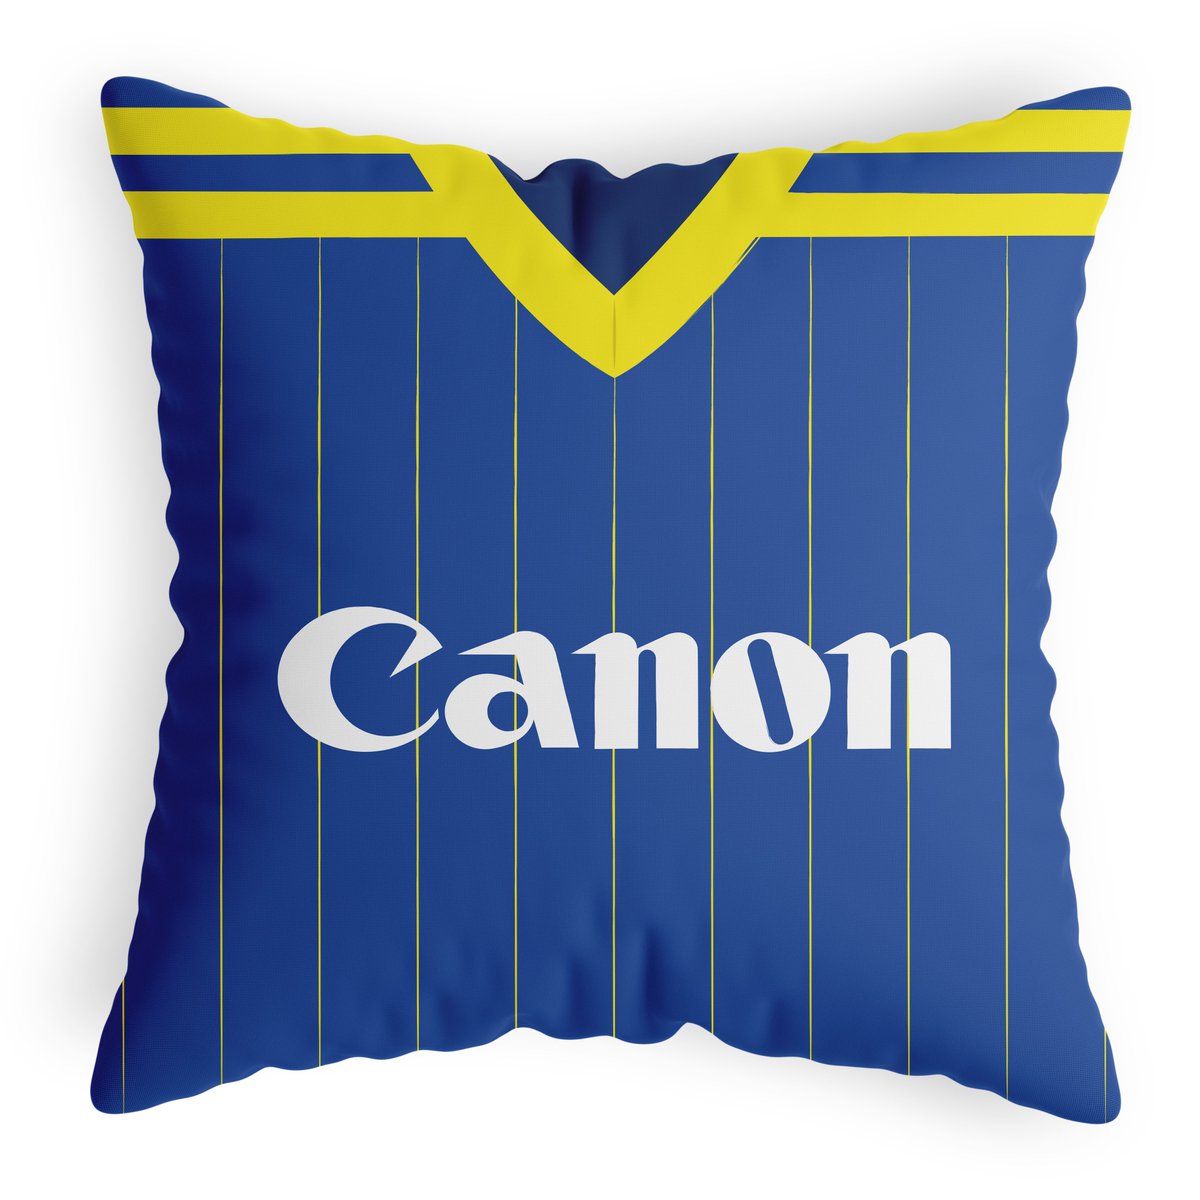 🚨 NEW DESIGN 🚨

Verona 1985 Elkjaer cushion now available at thenorthcurve.com.
Free worldwide delivery.

#HellasVerona #Verona #SerieB #Calcio @rick_hough @hellas_veronaUK @HellasVeronaNYC @HellasFansUK